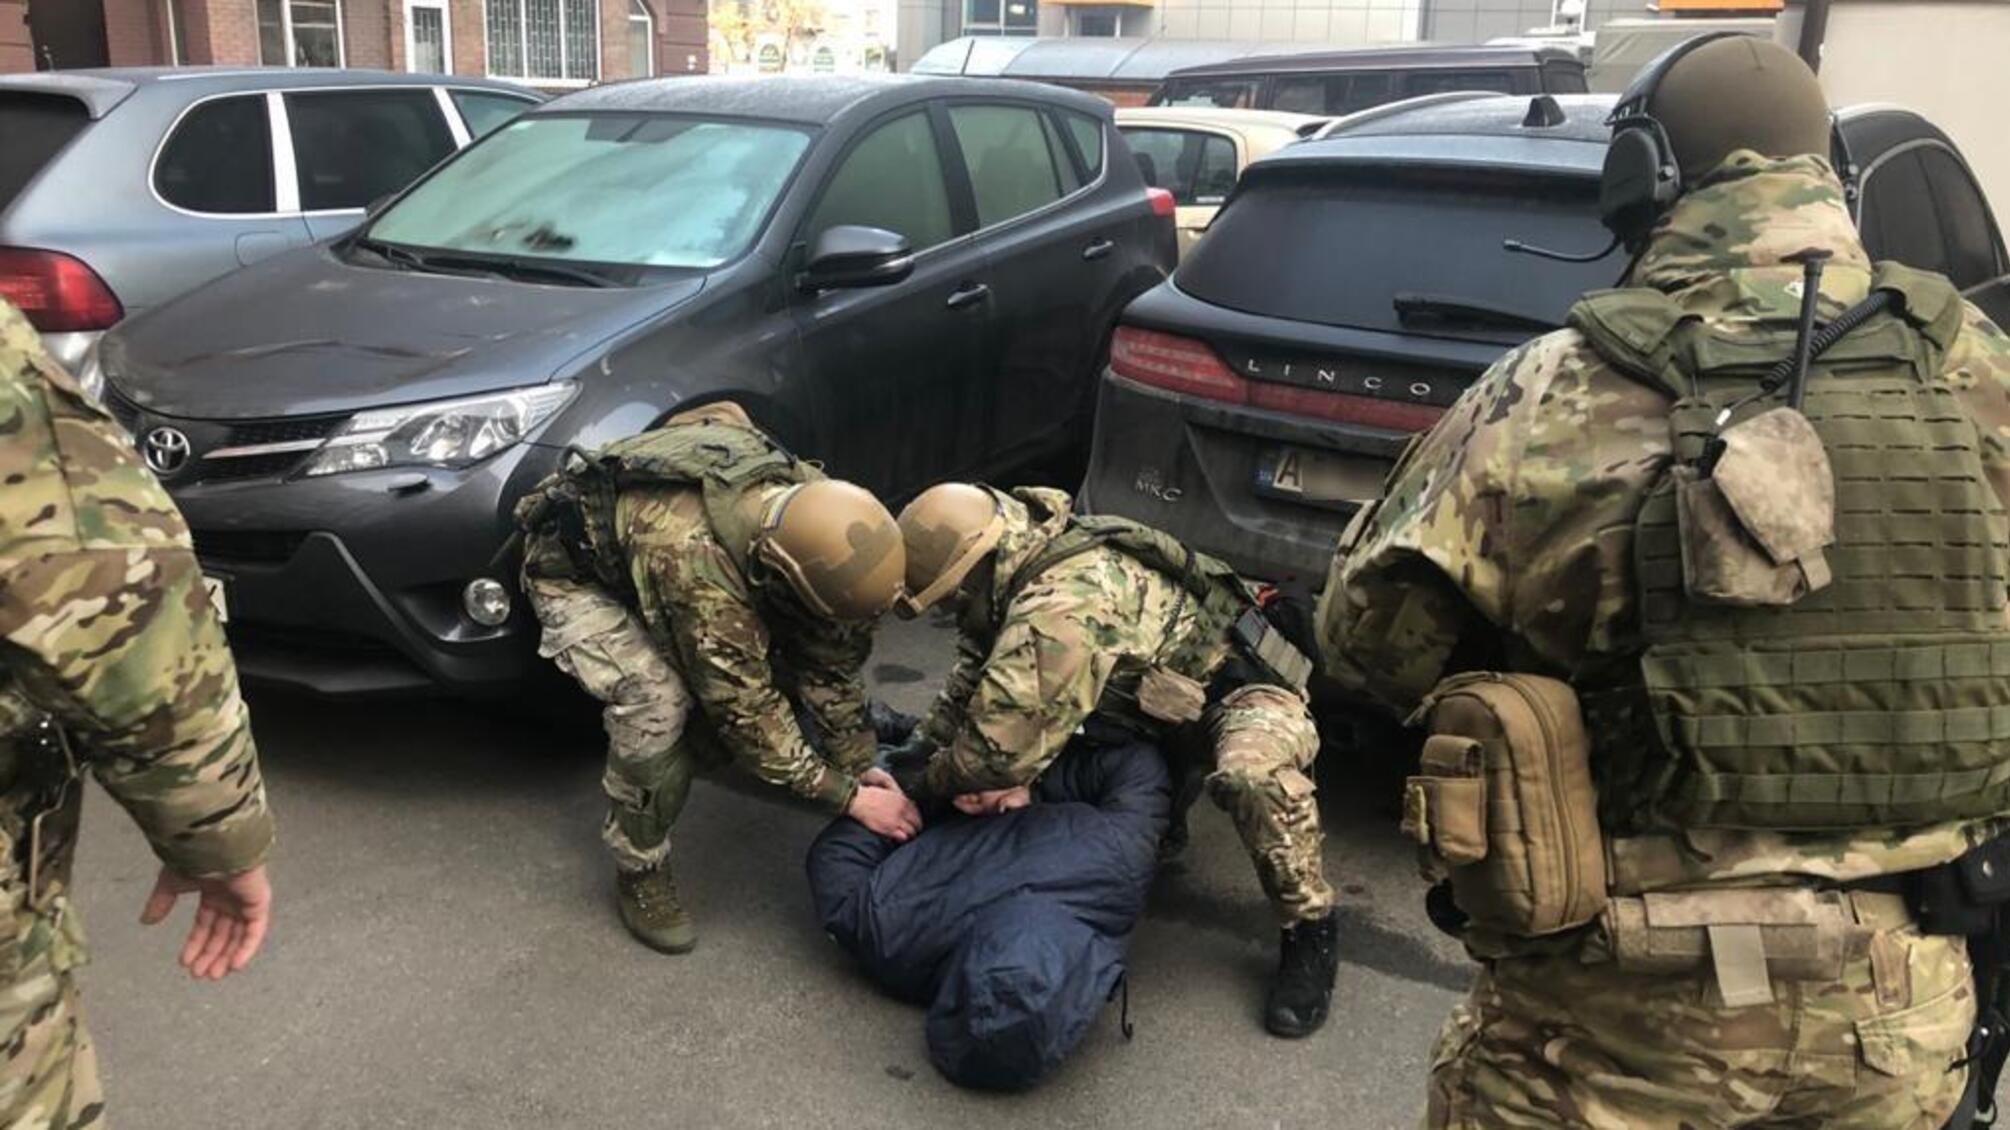 Підозрюваний у скоєнні замовних вбивств незаконно отримав громадянство України